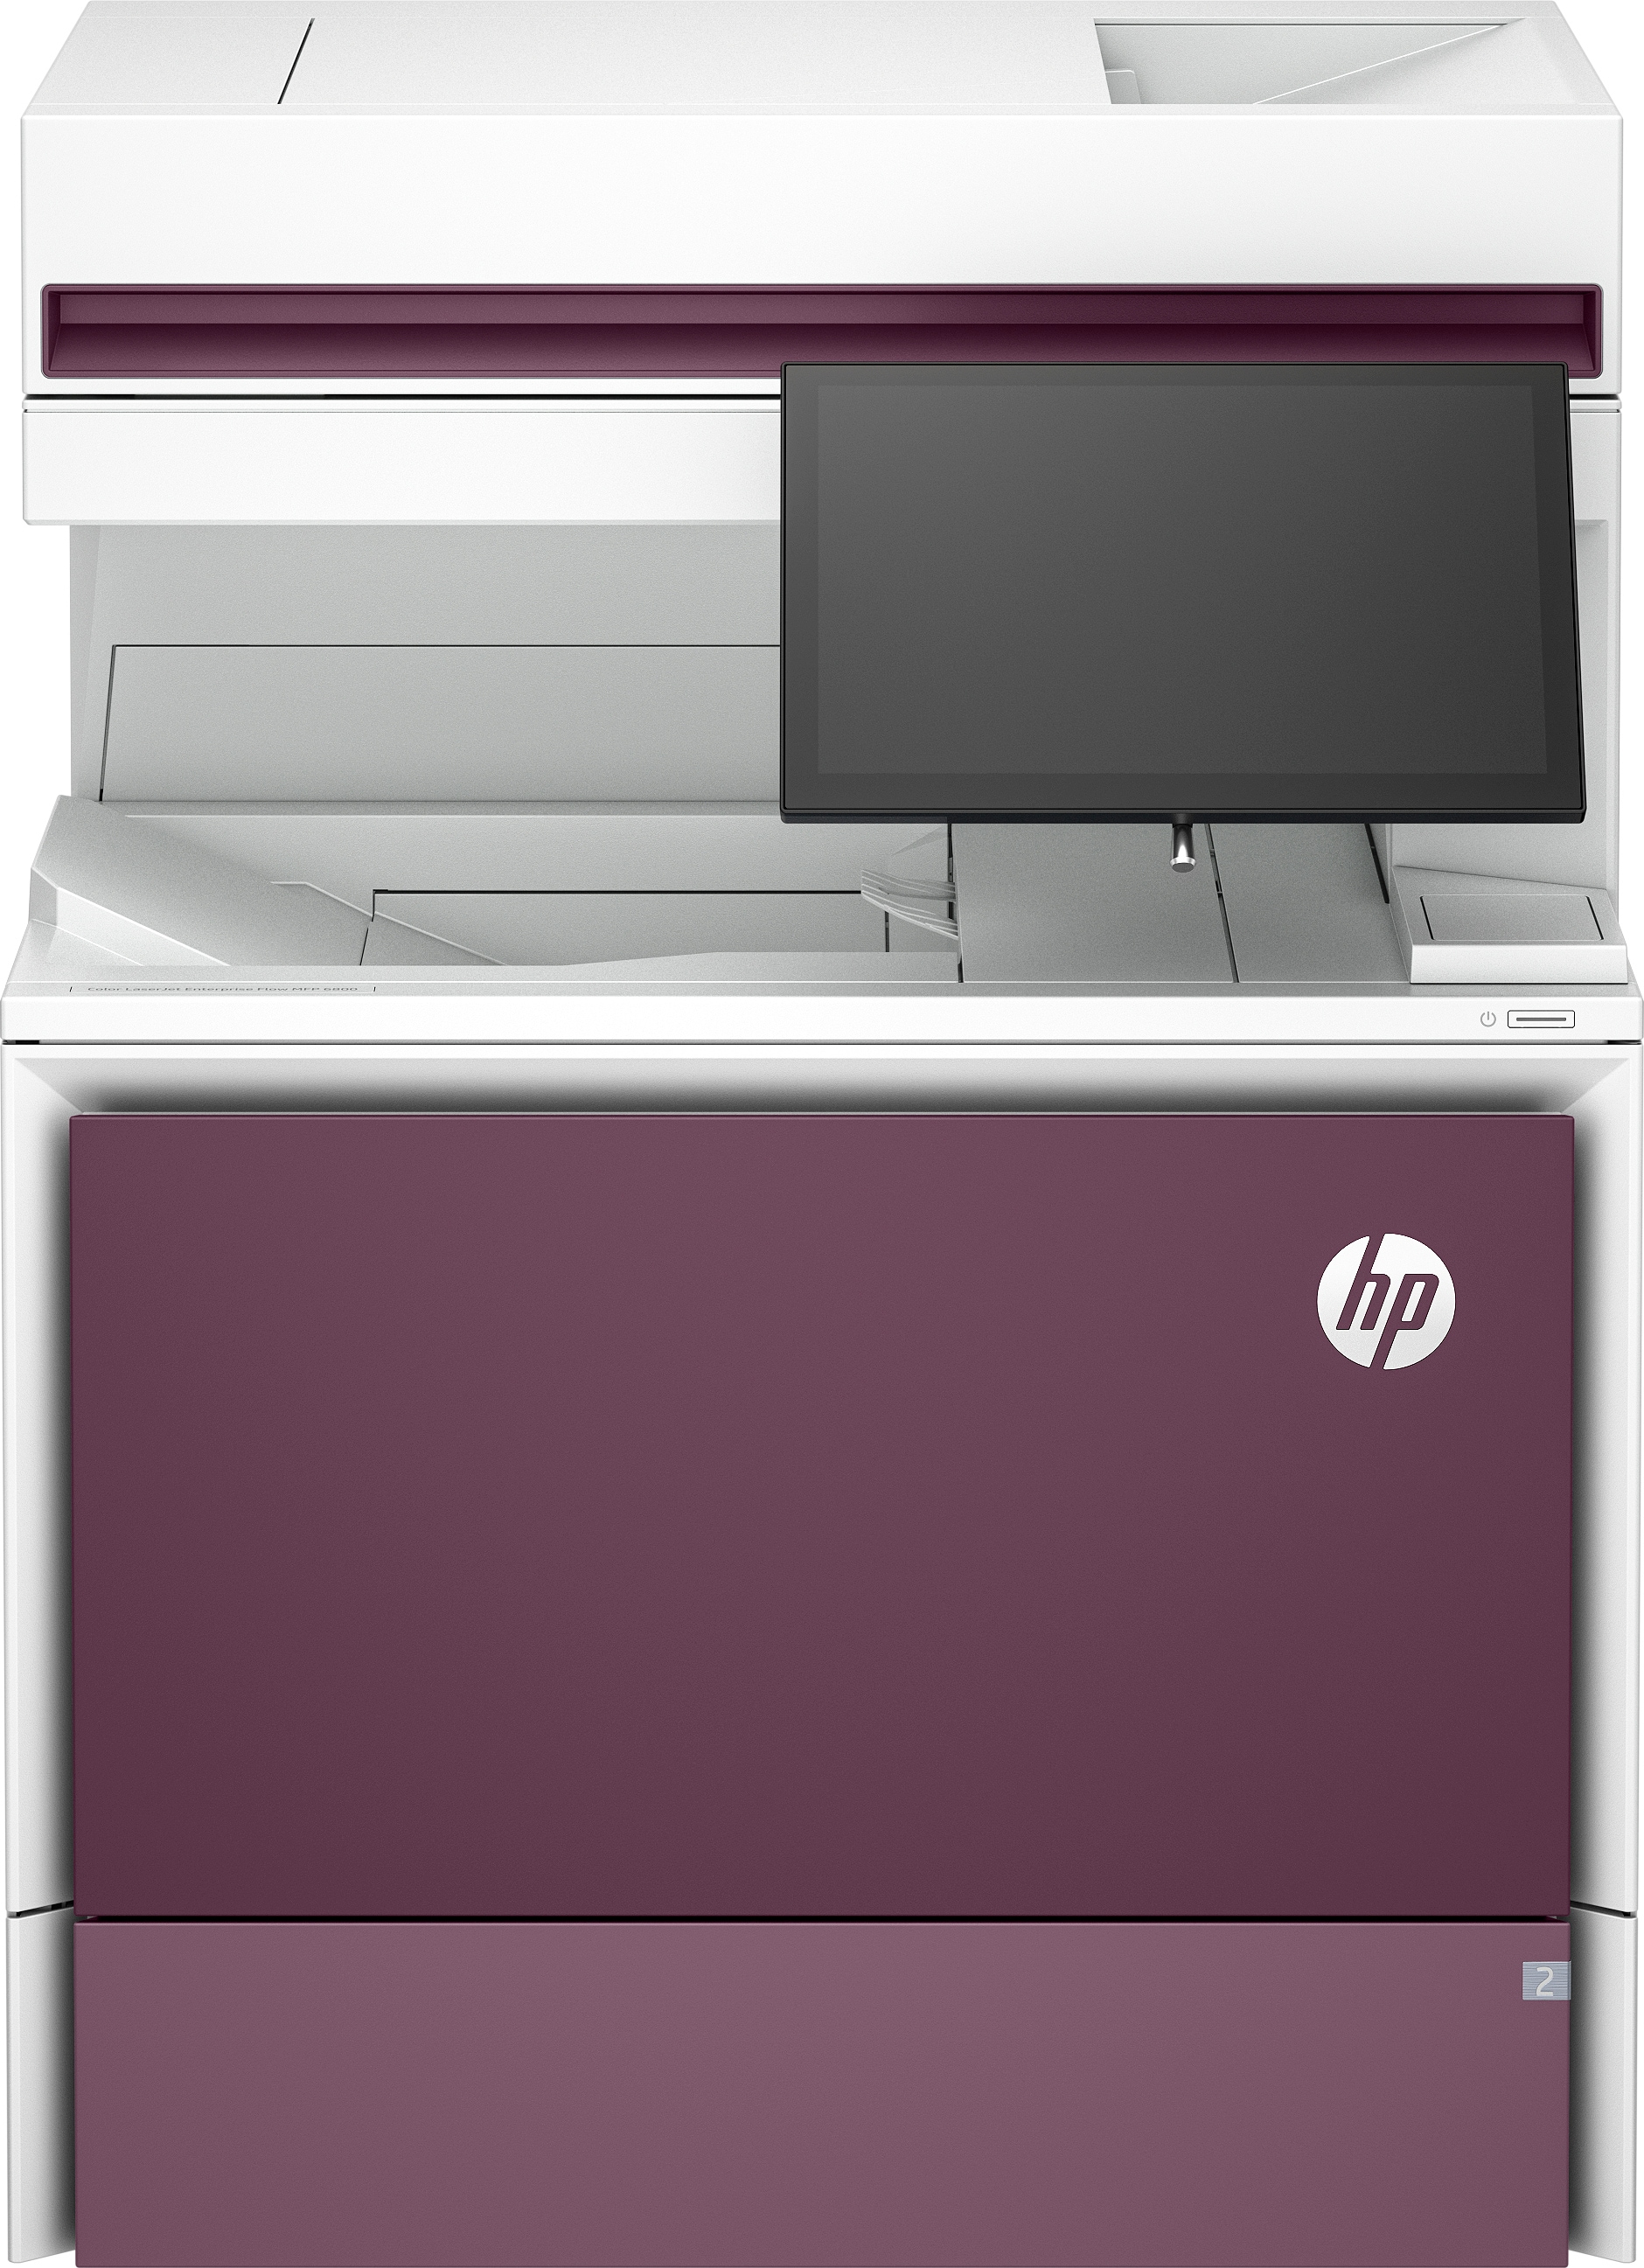 HP Imprimante multifonction Color LaserJet Enterprise Flow 6800zf, Impression, copie, scan, fax, Flow. Écran tactile. Agrafage. Cartouche TerraJet